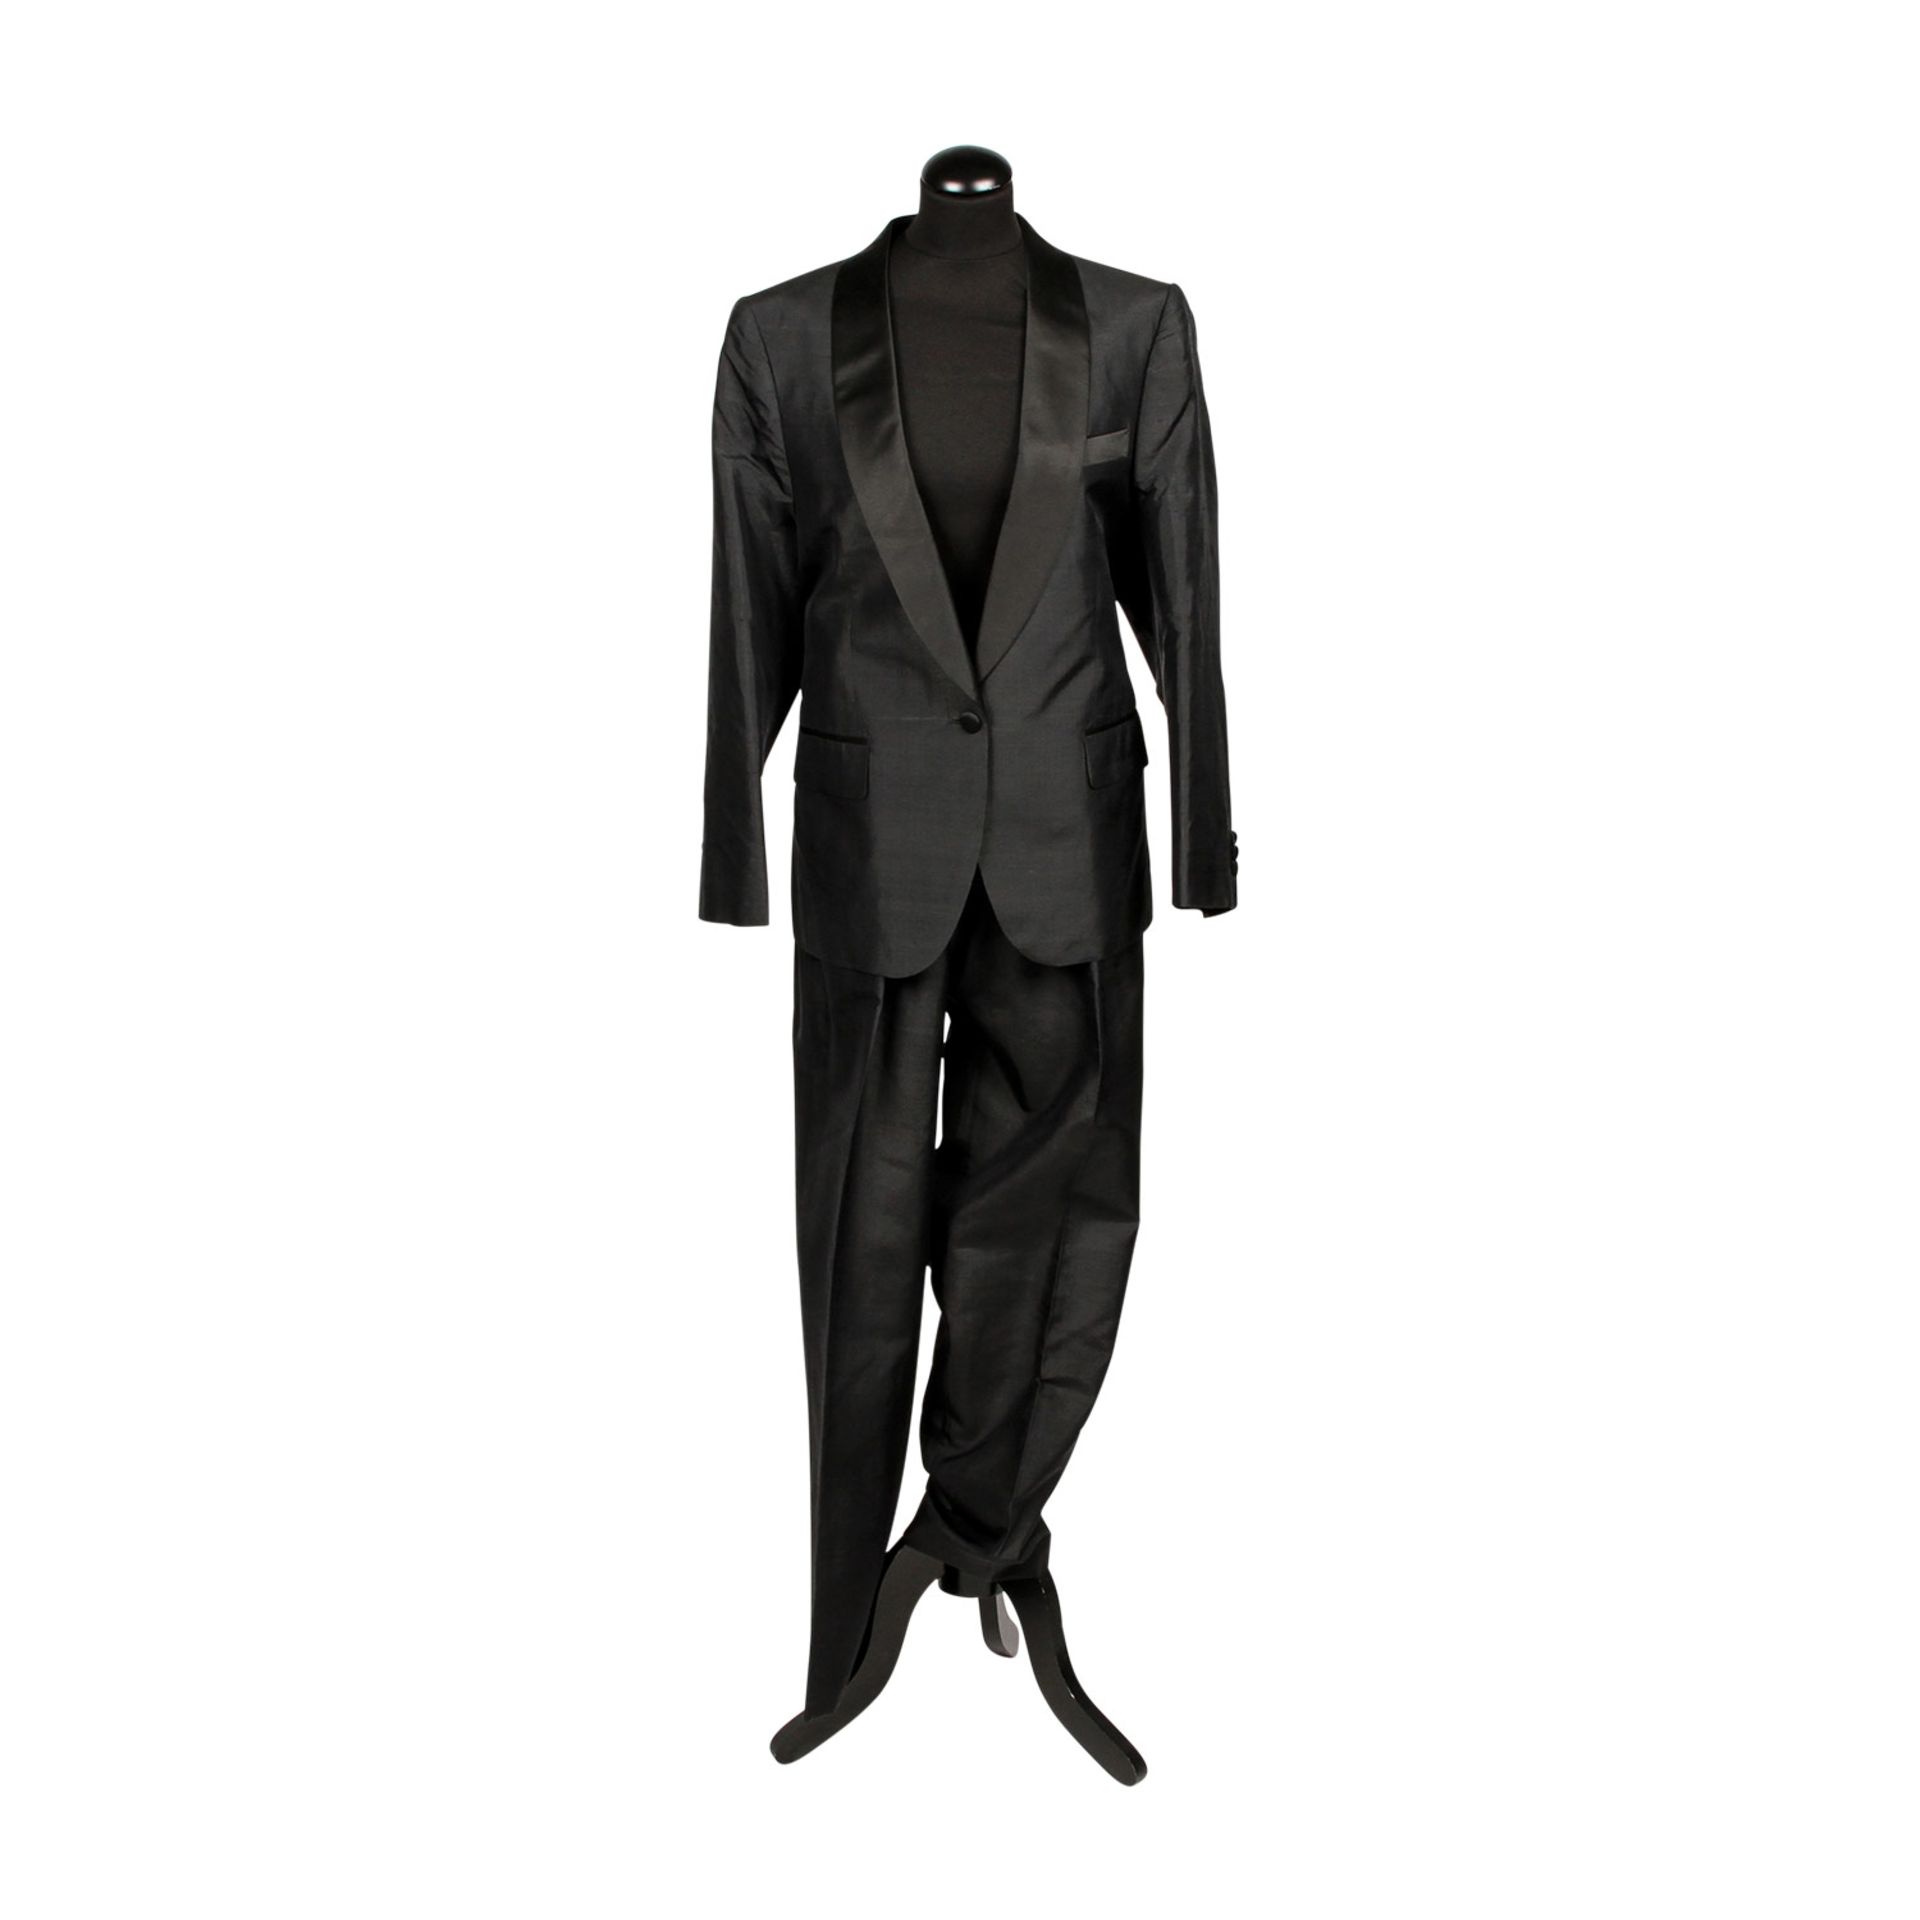 HARRYSON'S Vintage Anzug aus dem Privatbesitz von Doris Haug, 20.Jh.Schwarzer Blazer mit breitem